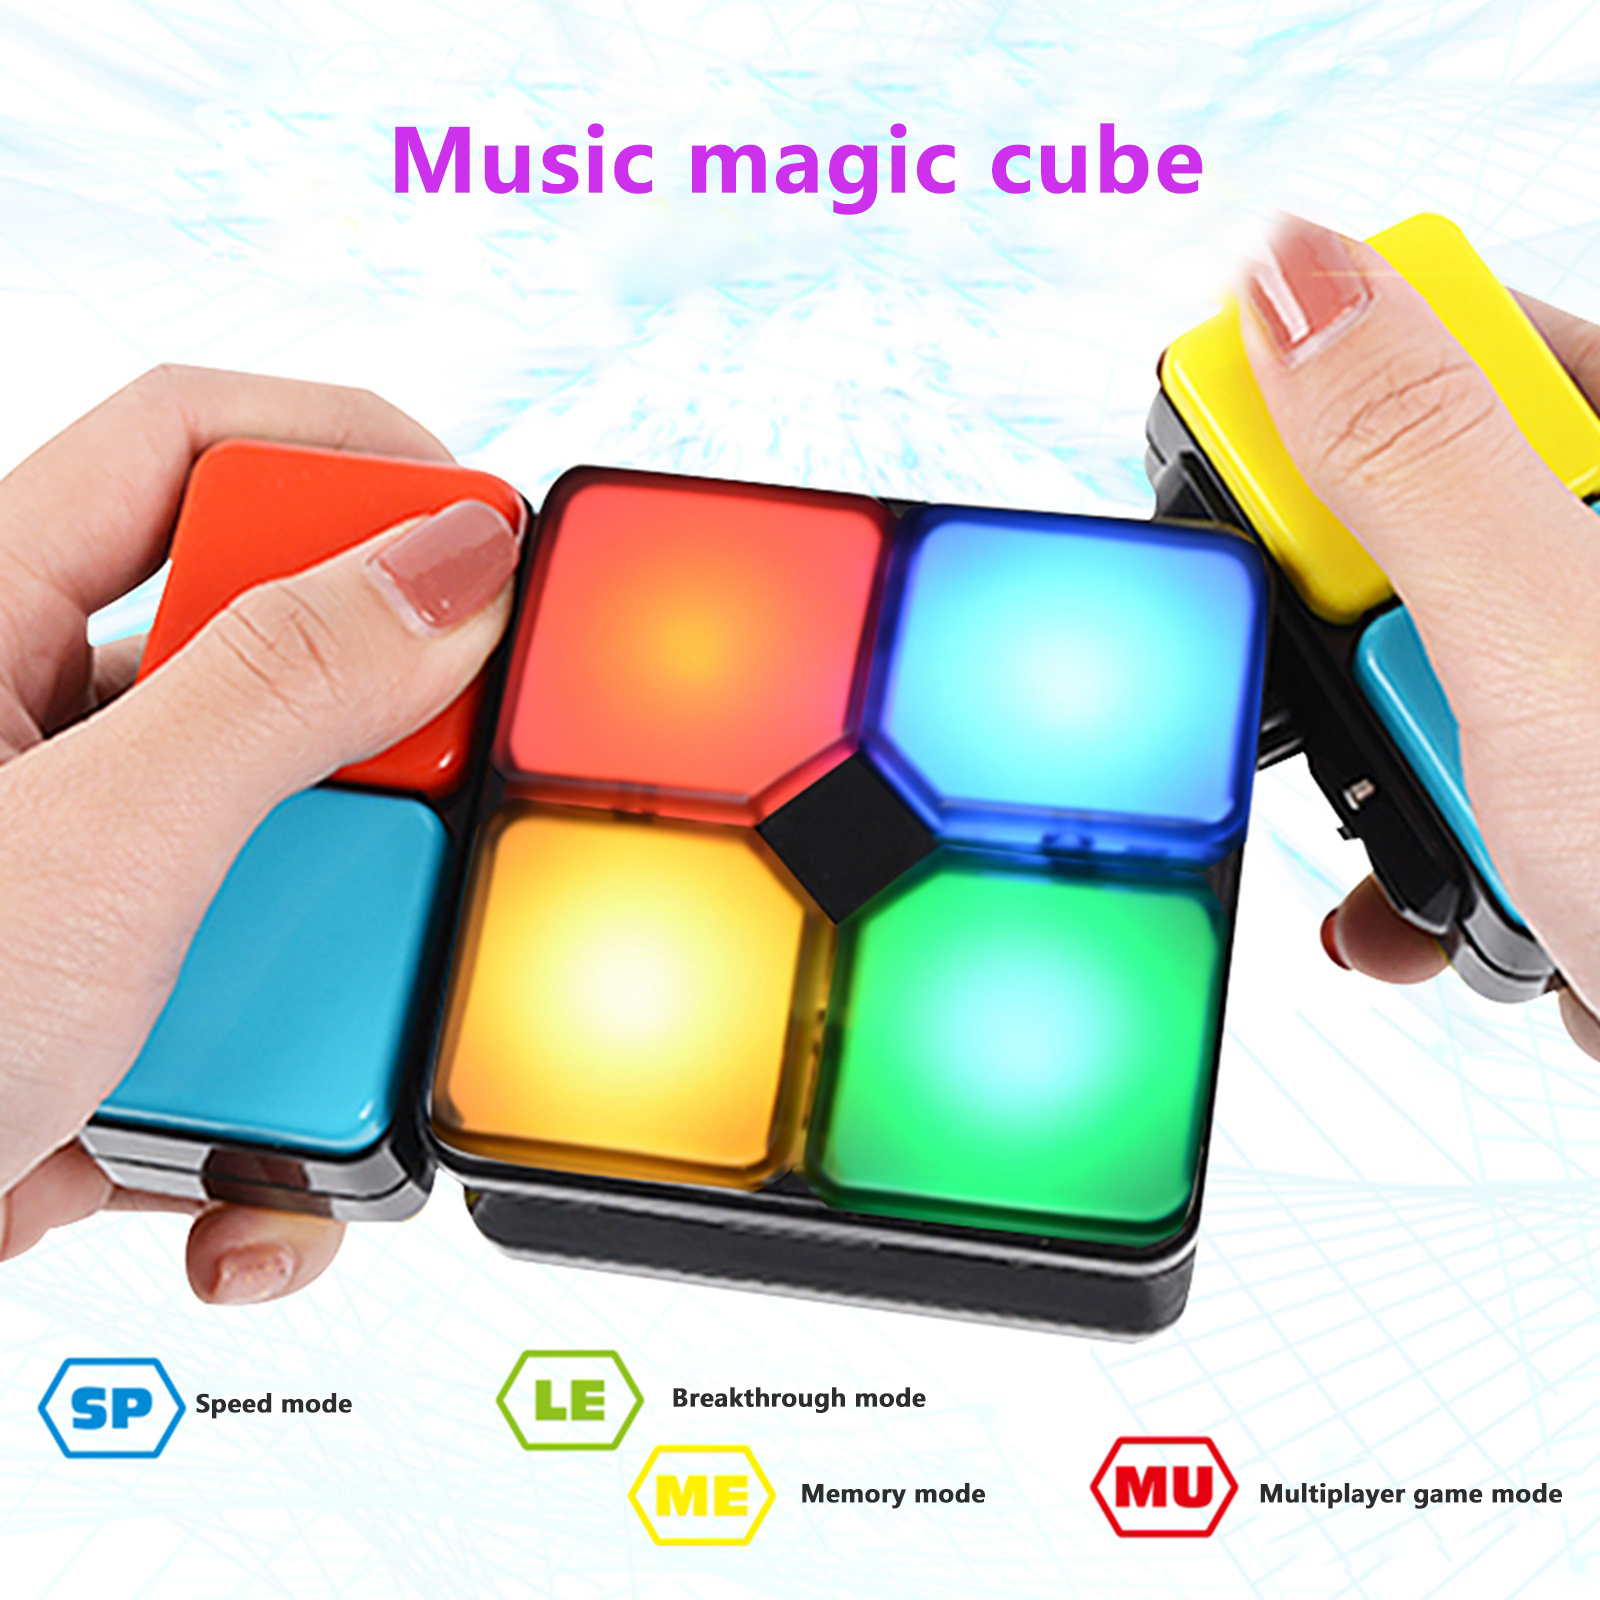 Giocattoli elettrici musicali in plastica multicolore con luci e musica, giocattoli cubi musicali leggeri per bambini e adulti